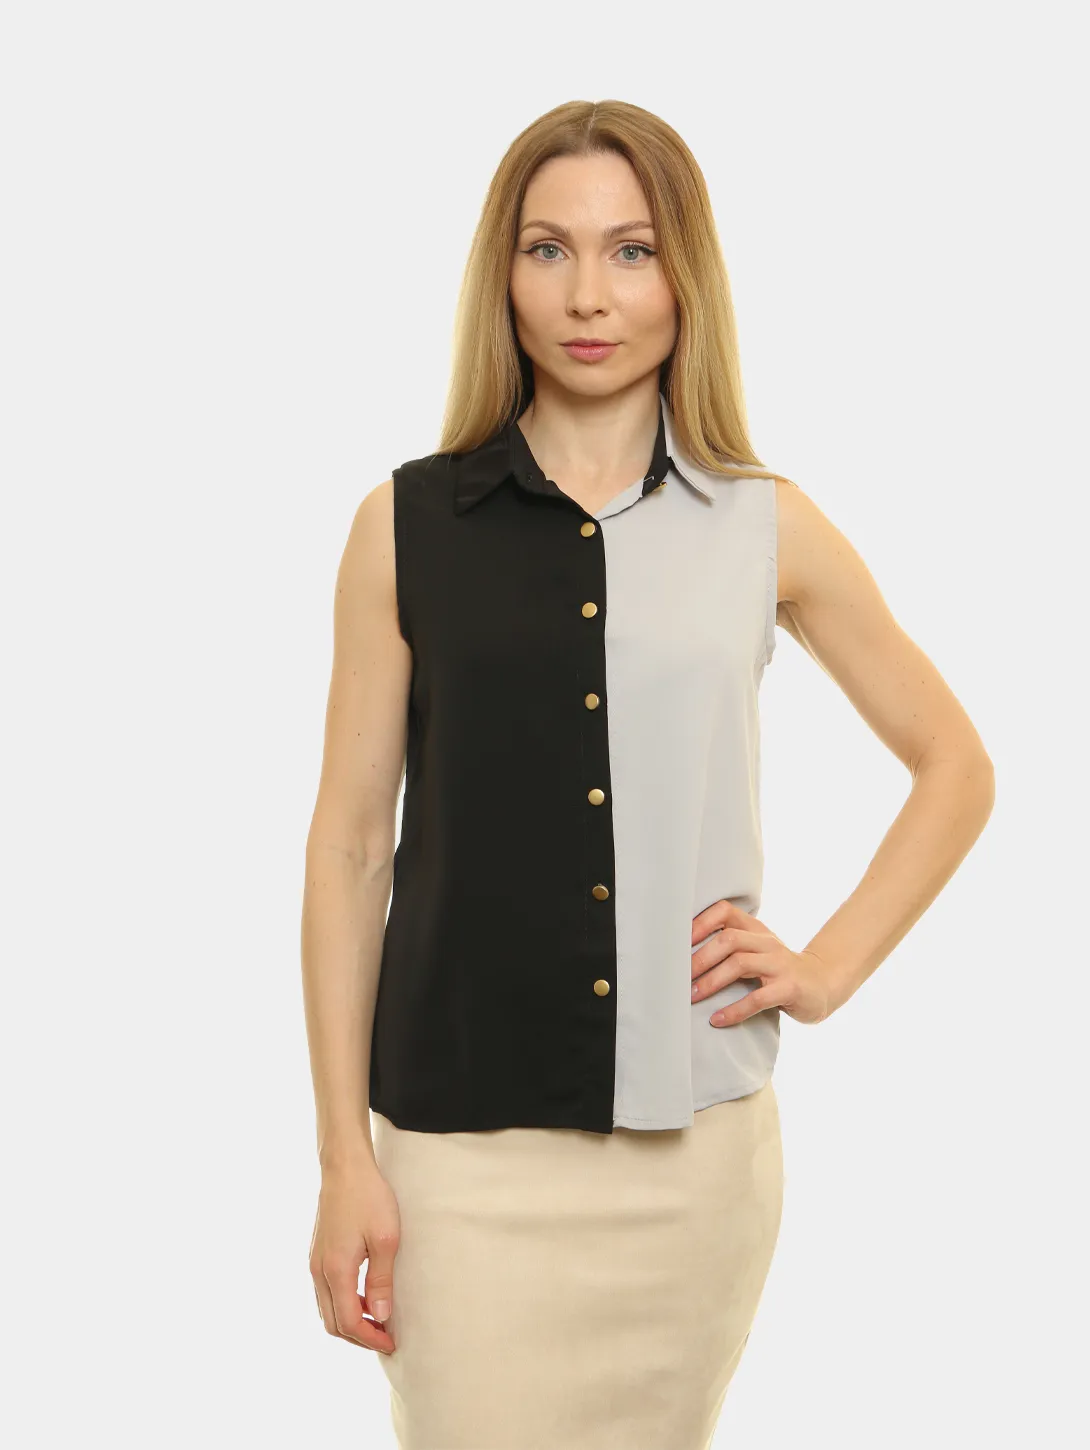 Блузка женская, двухцветная купить по цене 550 ₽ в интернет-магазинеKazanExpress